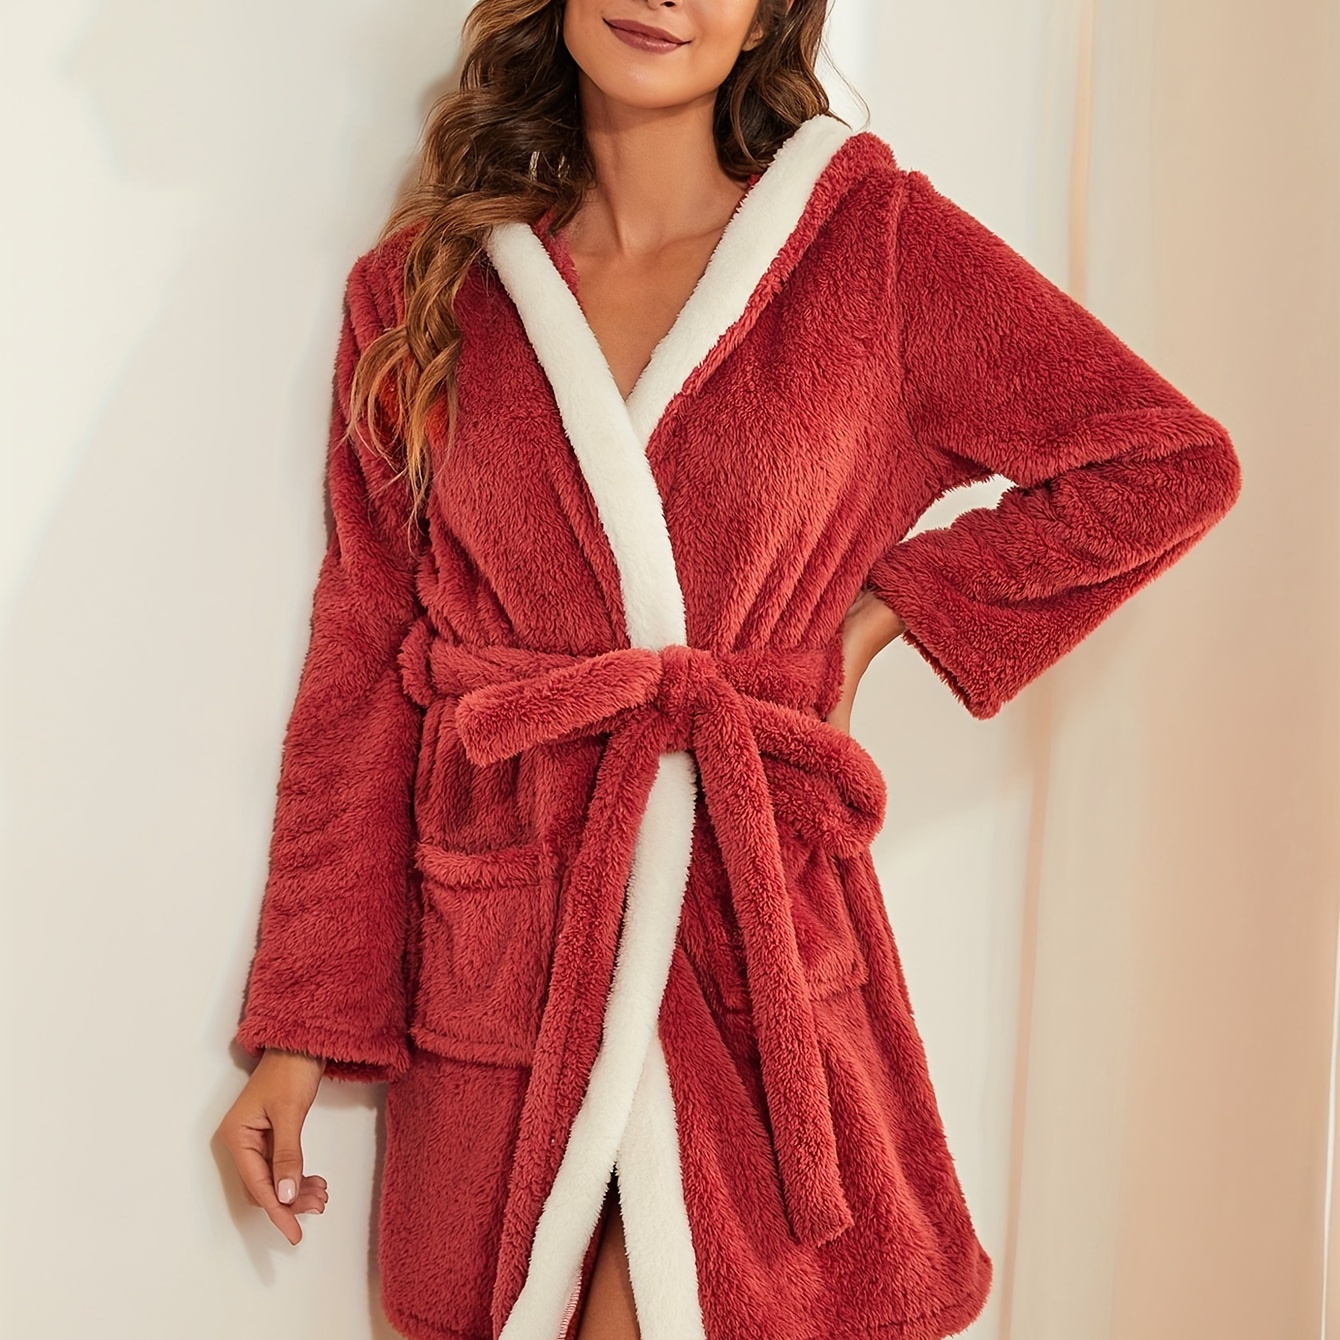 

Colorblock Fuzzy Hooded Robe, Long Sleeve Robe With Belt & Pockets, Women's Sleepwear